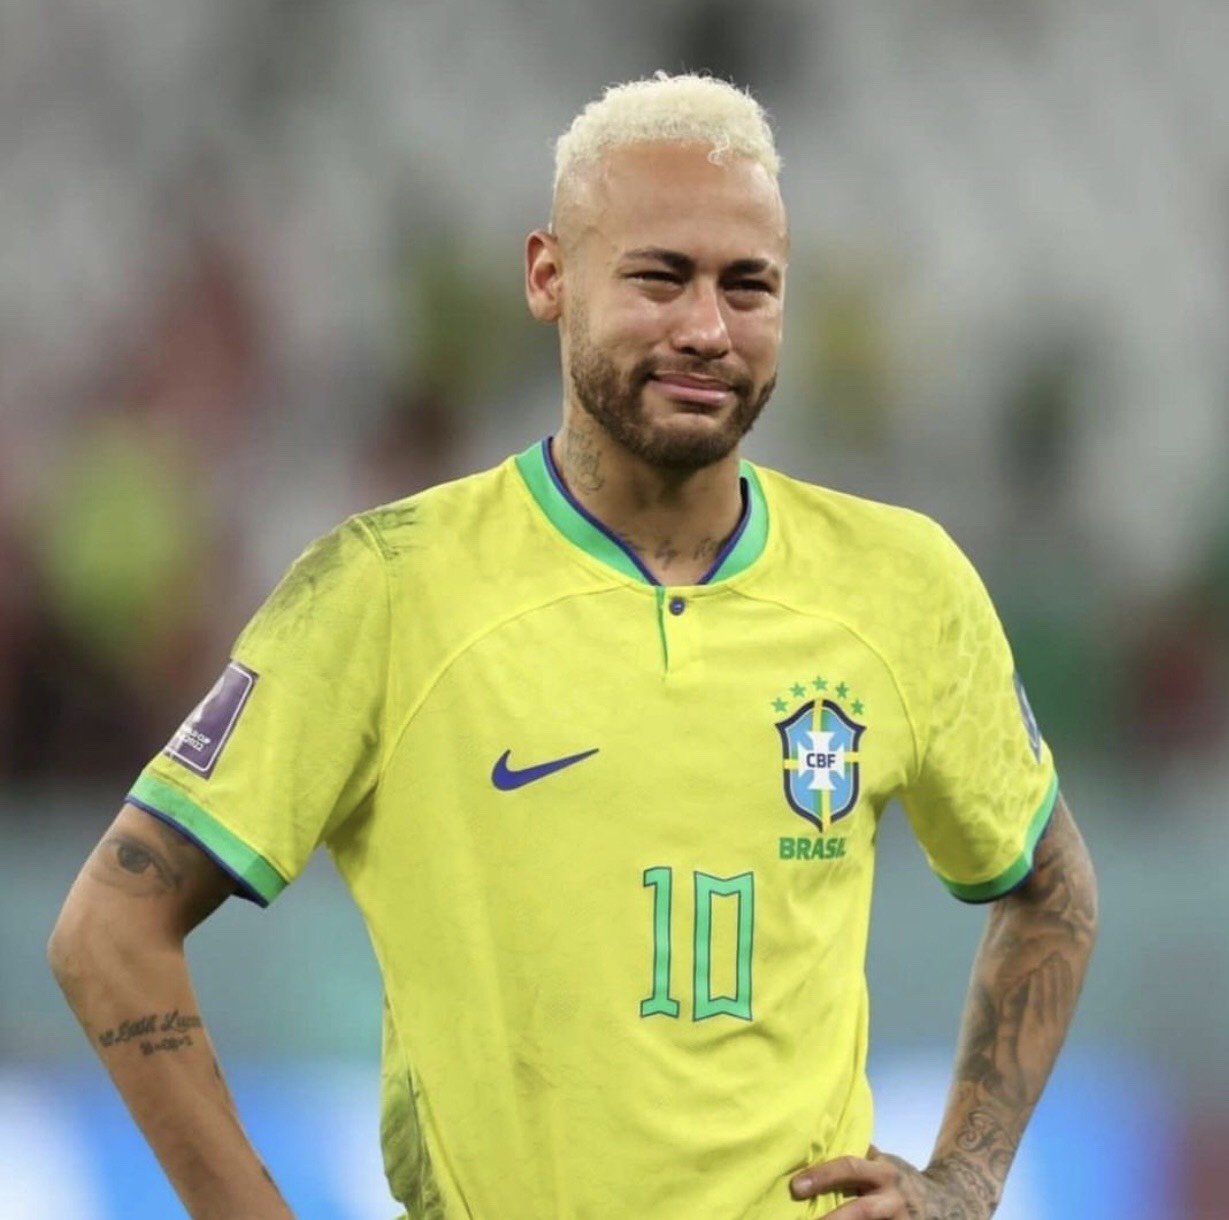 Tan chảy với hình ảnh con trai Perisic 'lau khô nước mắt' Neymar